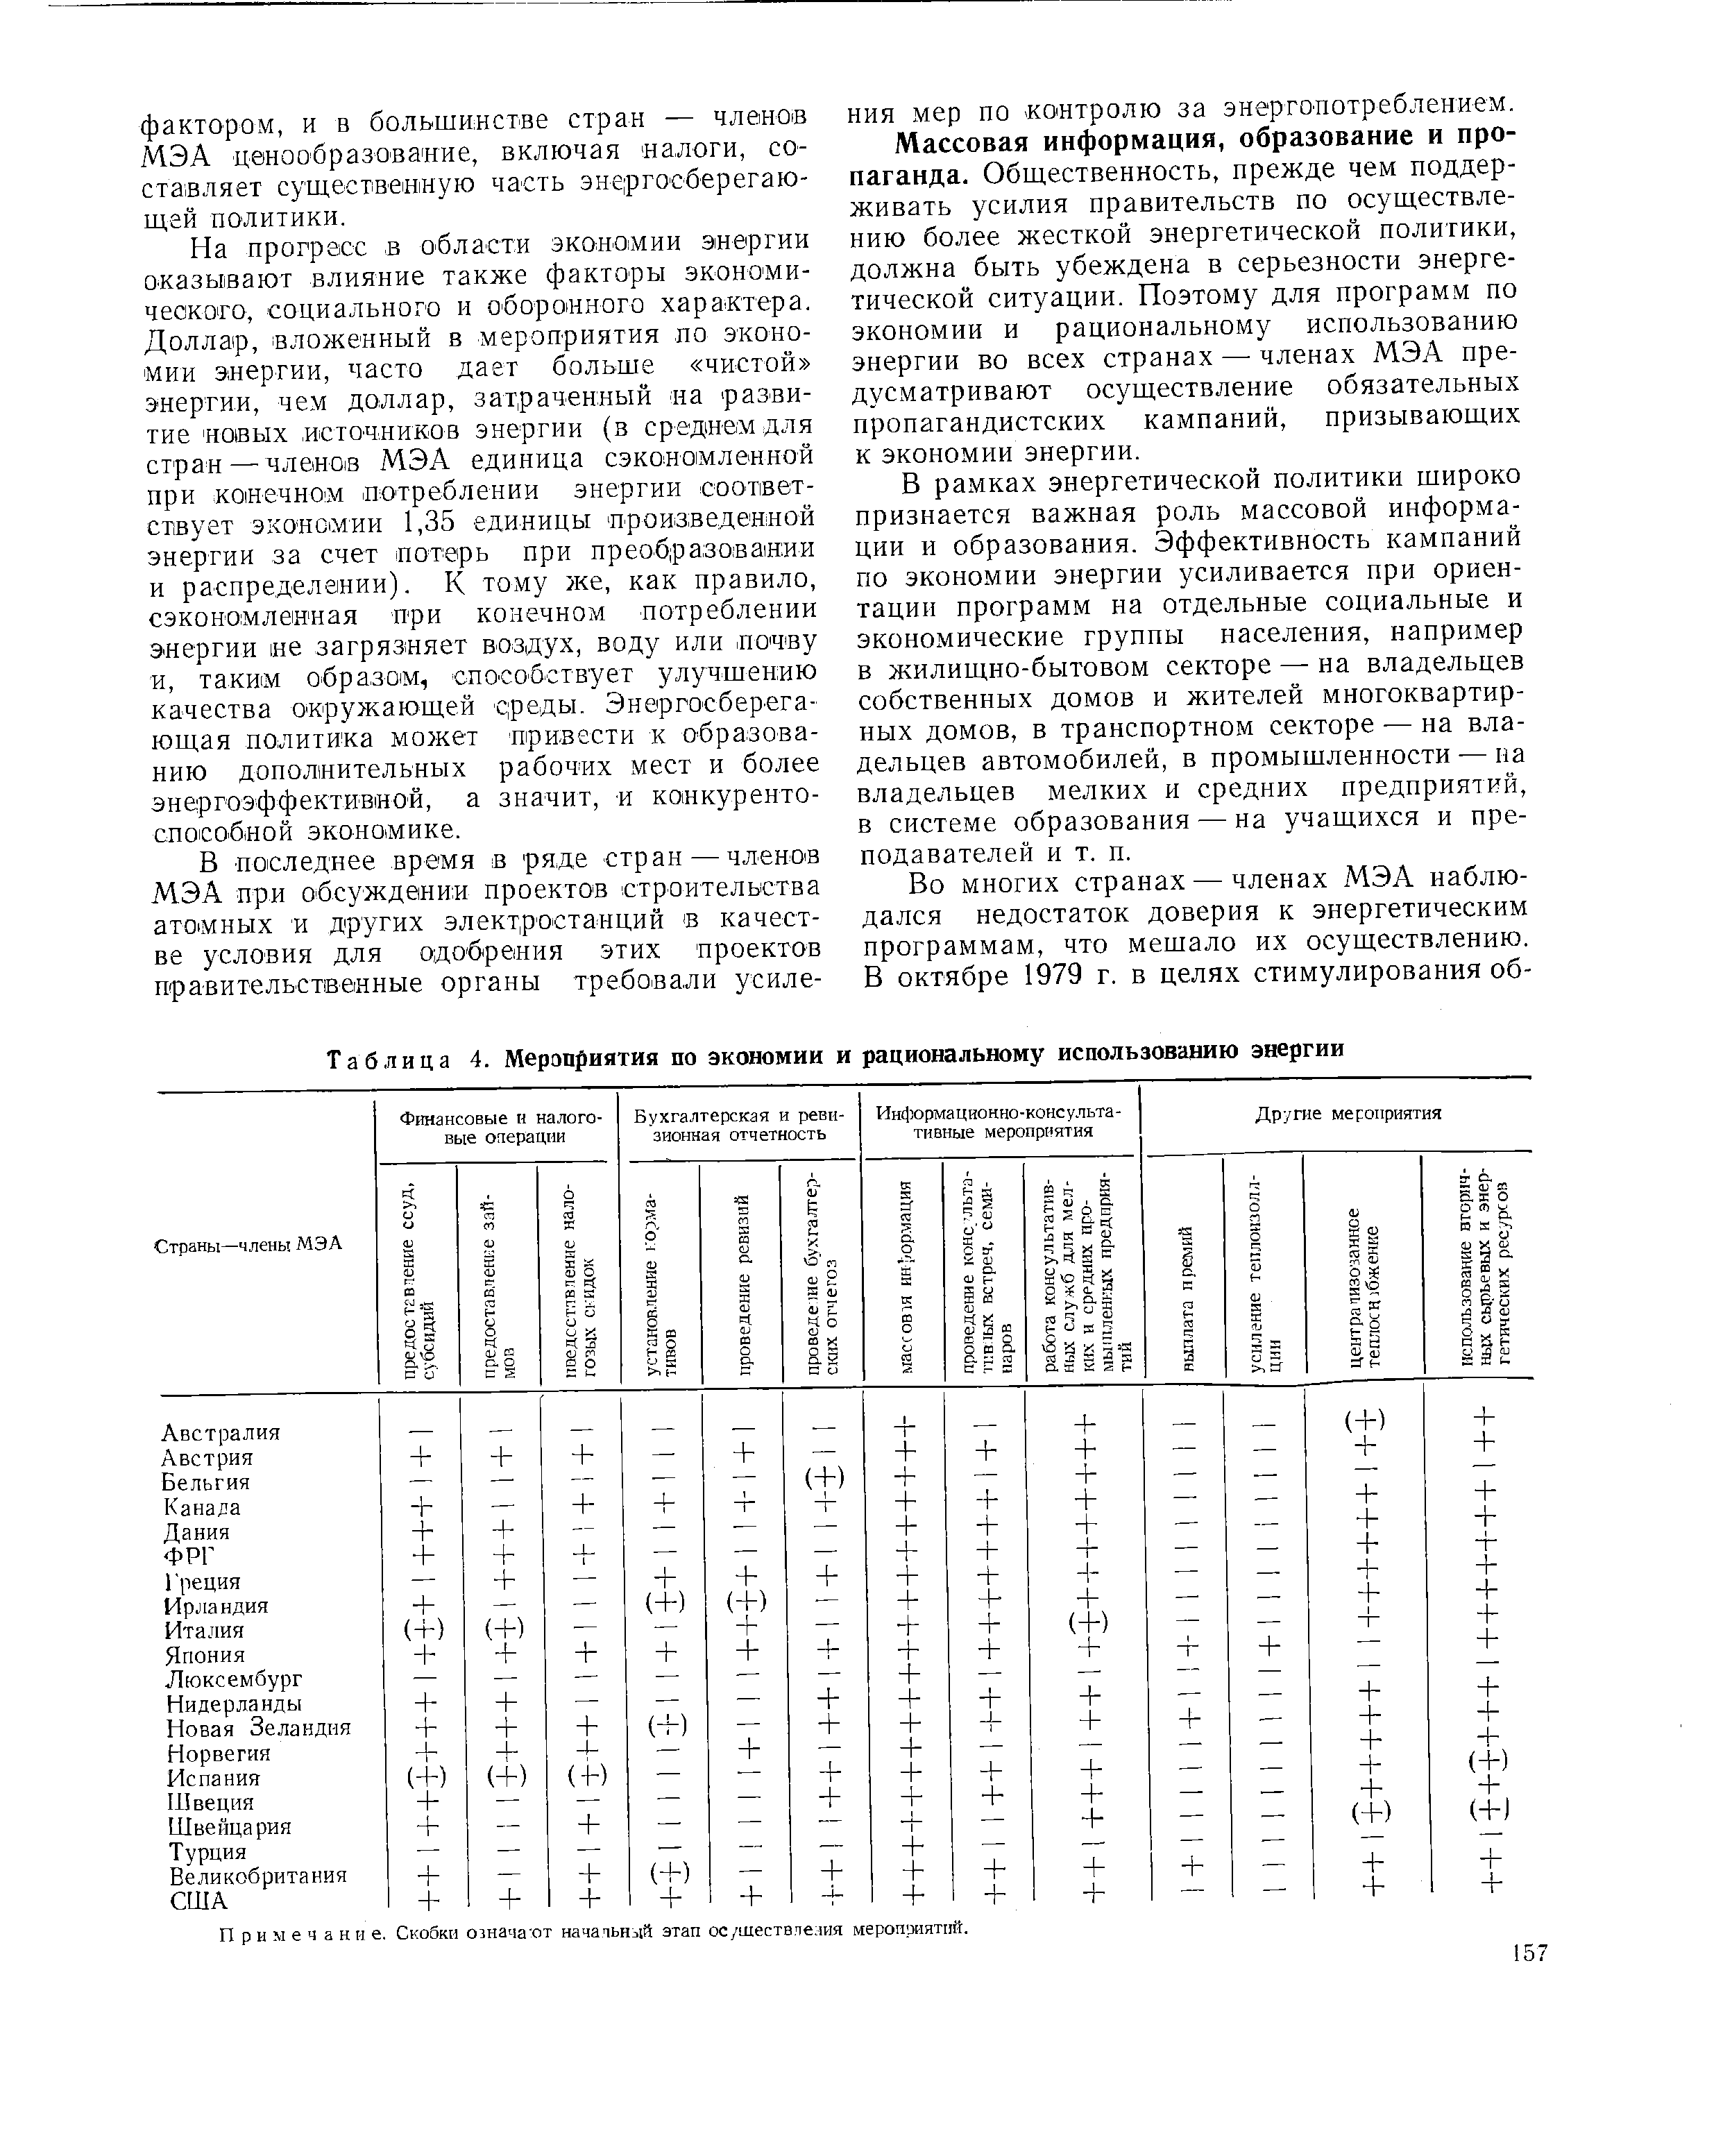 Таблица 4. Мероприятия по экономии и <a href="/info/189454">рациональному использованию</a> энергии
